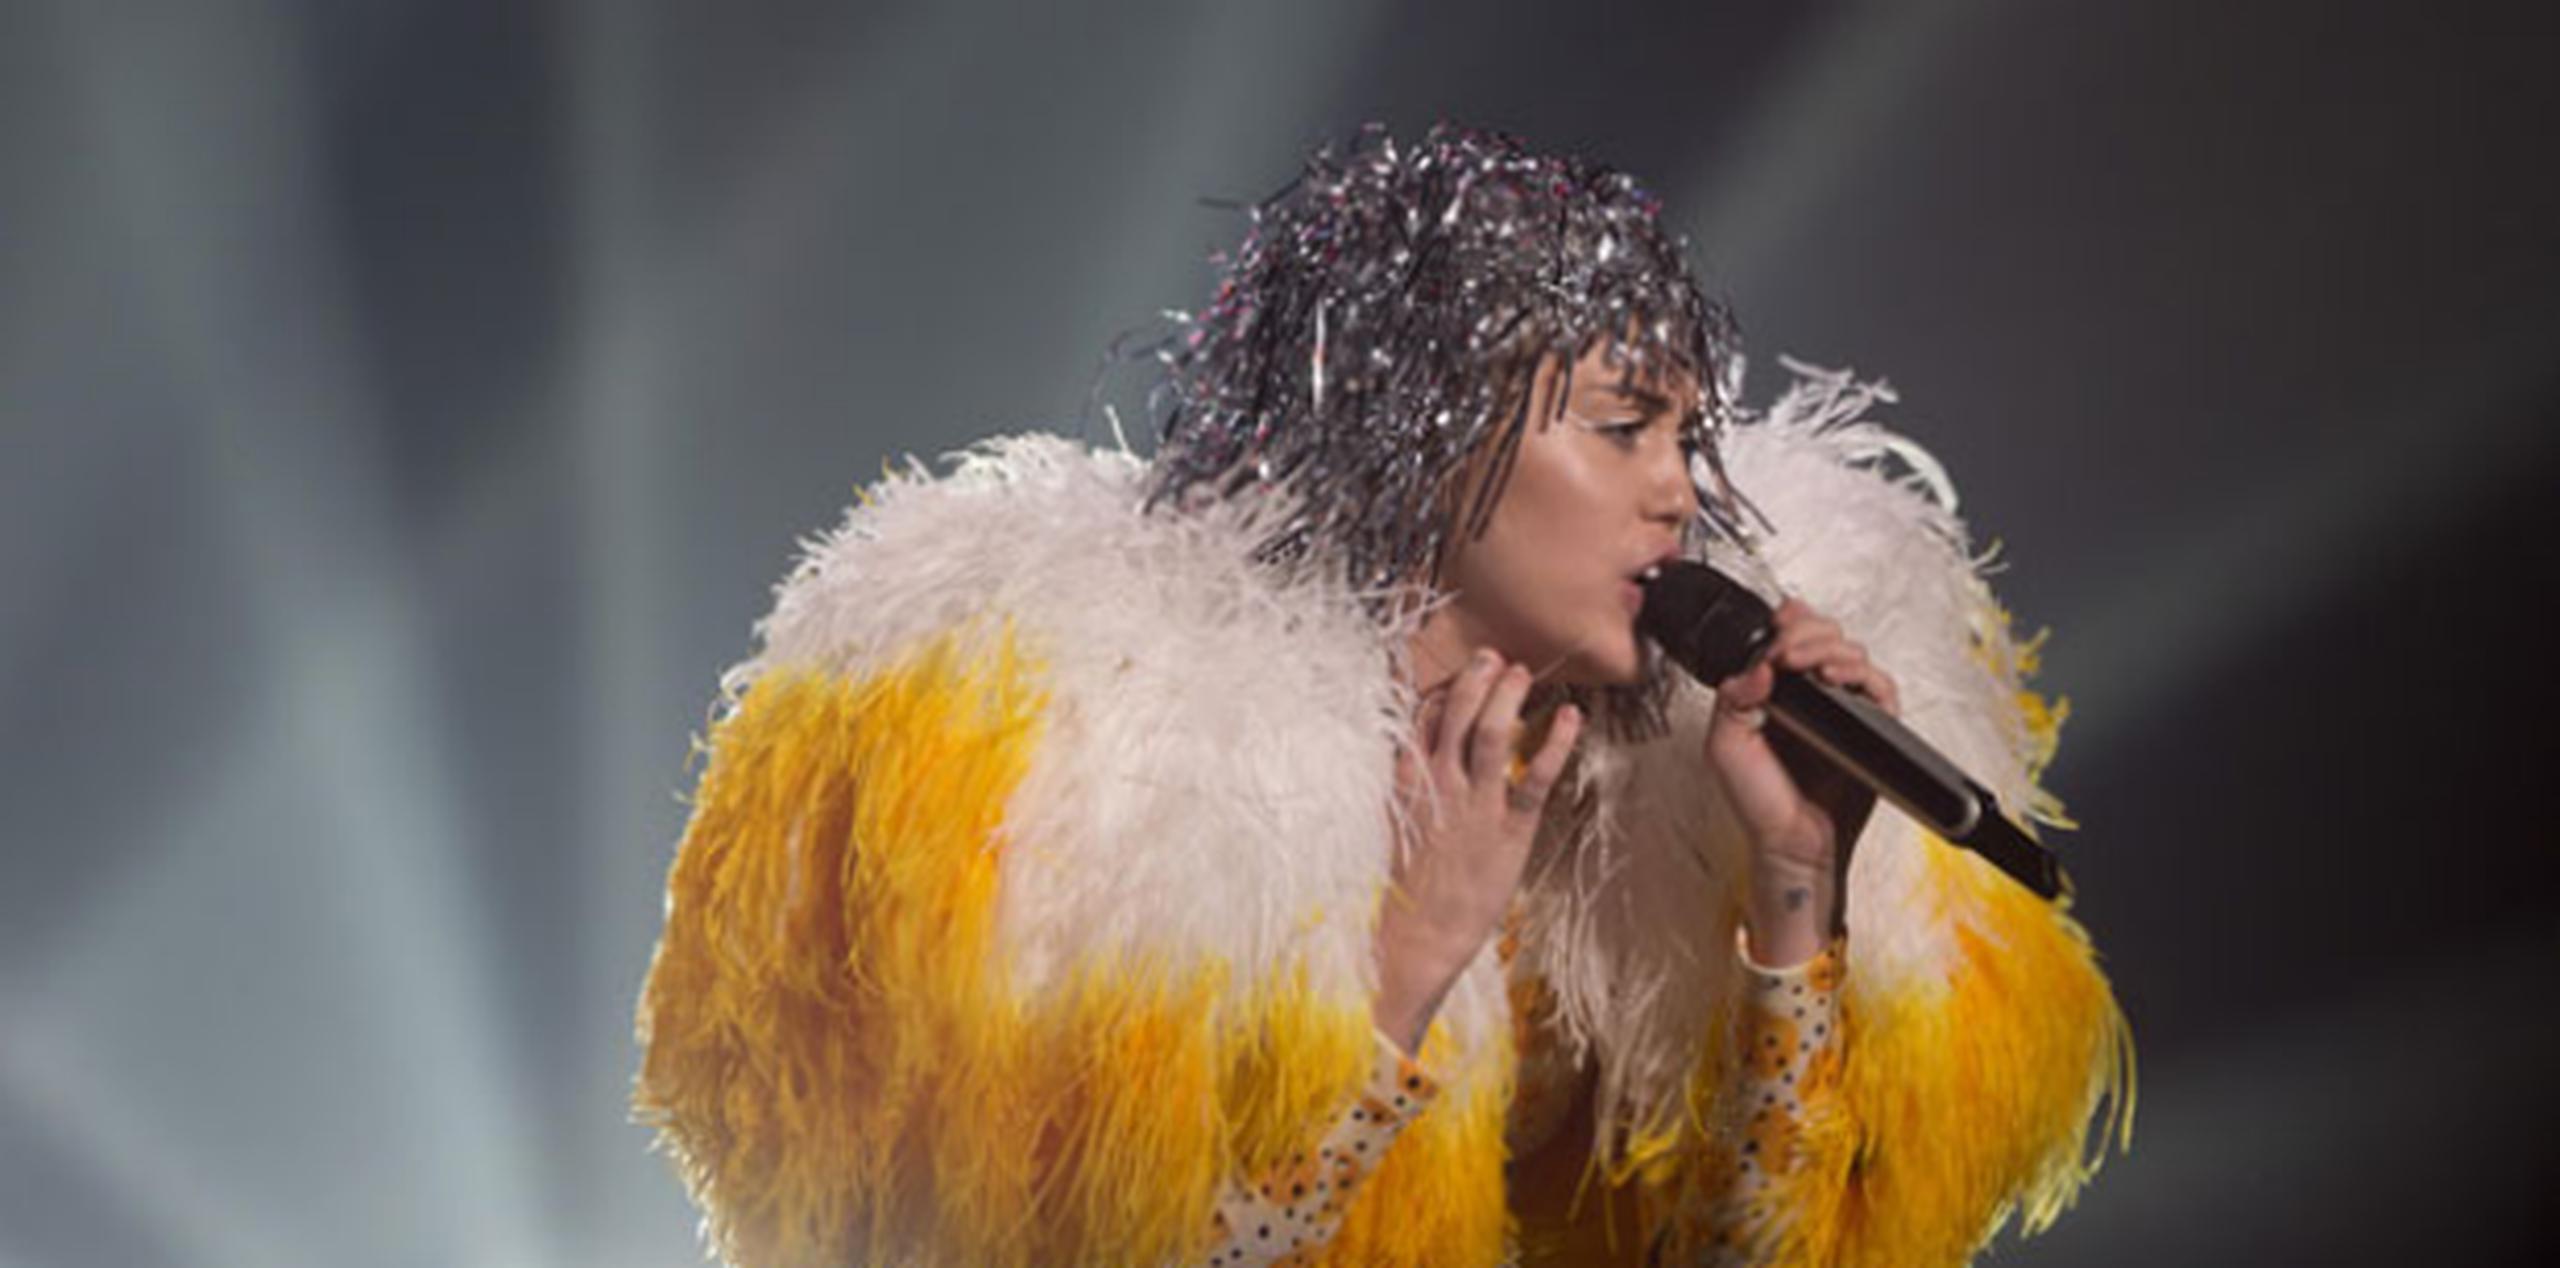 Miley Cyrus arribó al escenario con un leotardo amarillo y un bolso gigante del mismo color para entonar el tema SMS (Bangerz).(xavier. araujo@gfrmedia.com)